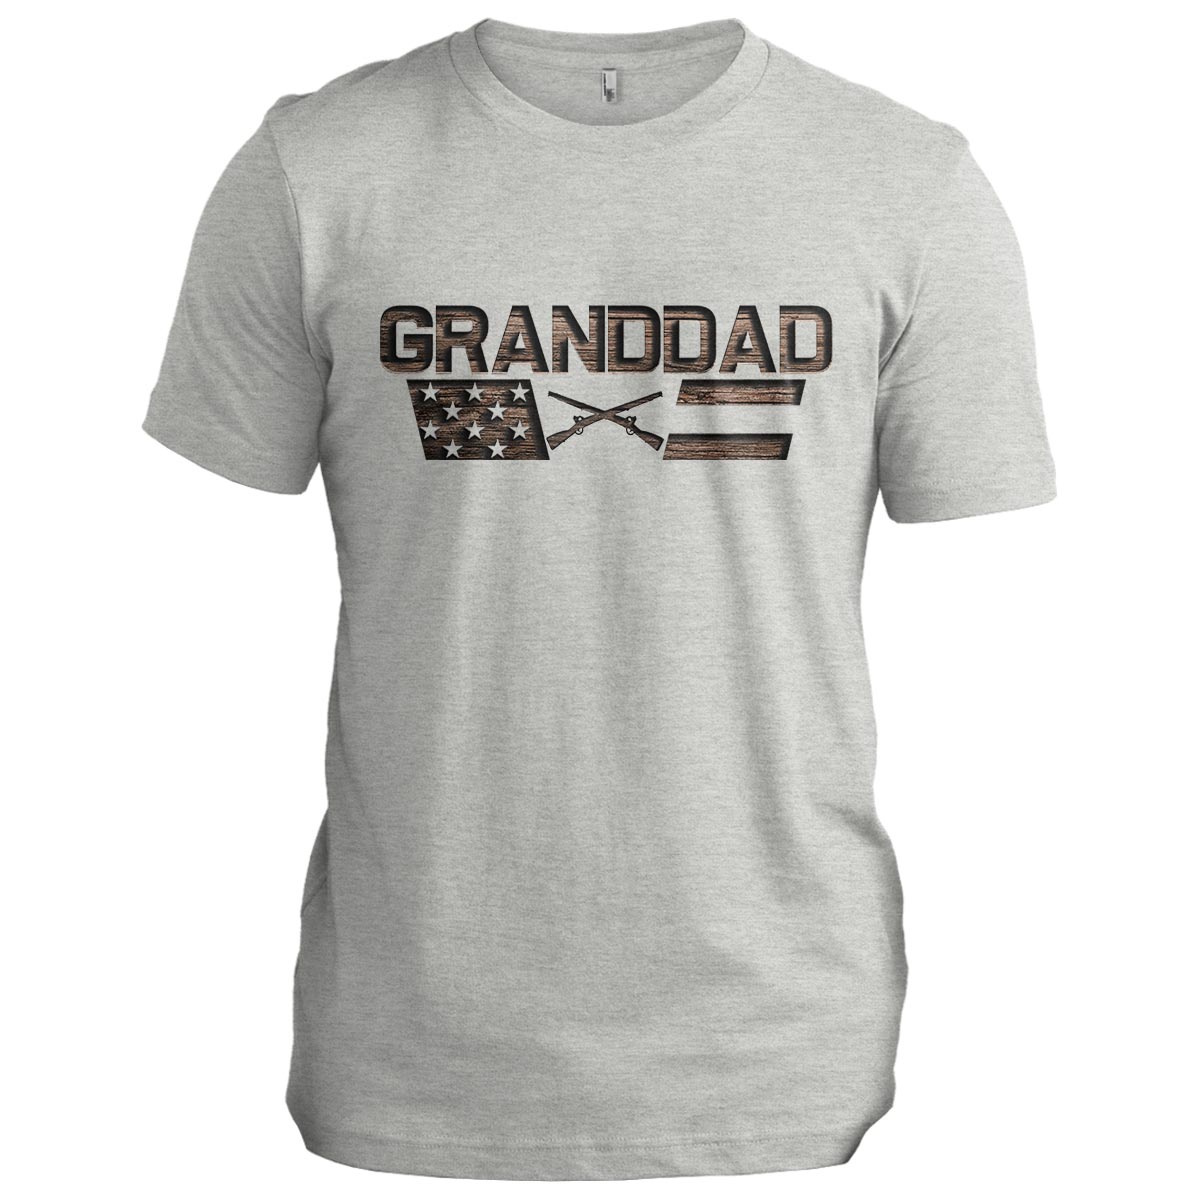 granddad: Strong as Oak